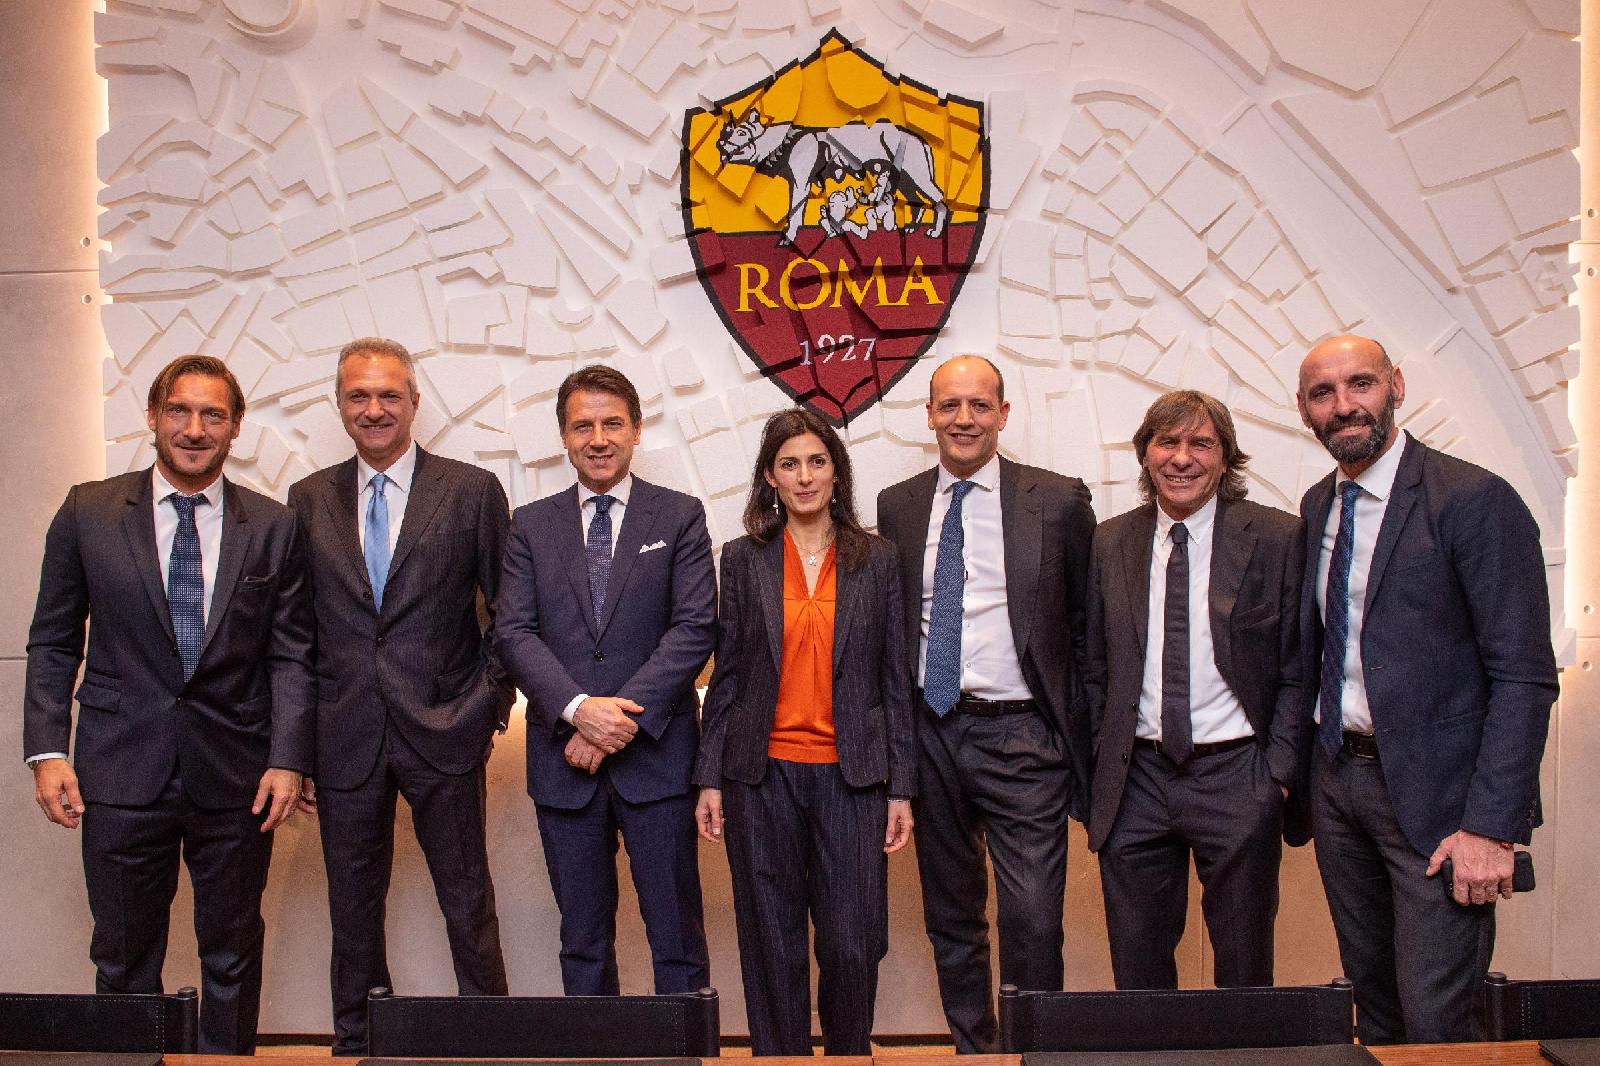 Da sinistra: Totti, Fienga, il Premier Conte,  la Sindaca Raggi, Baldissoni, Bruno Conti, Monchi, di LaPresse